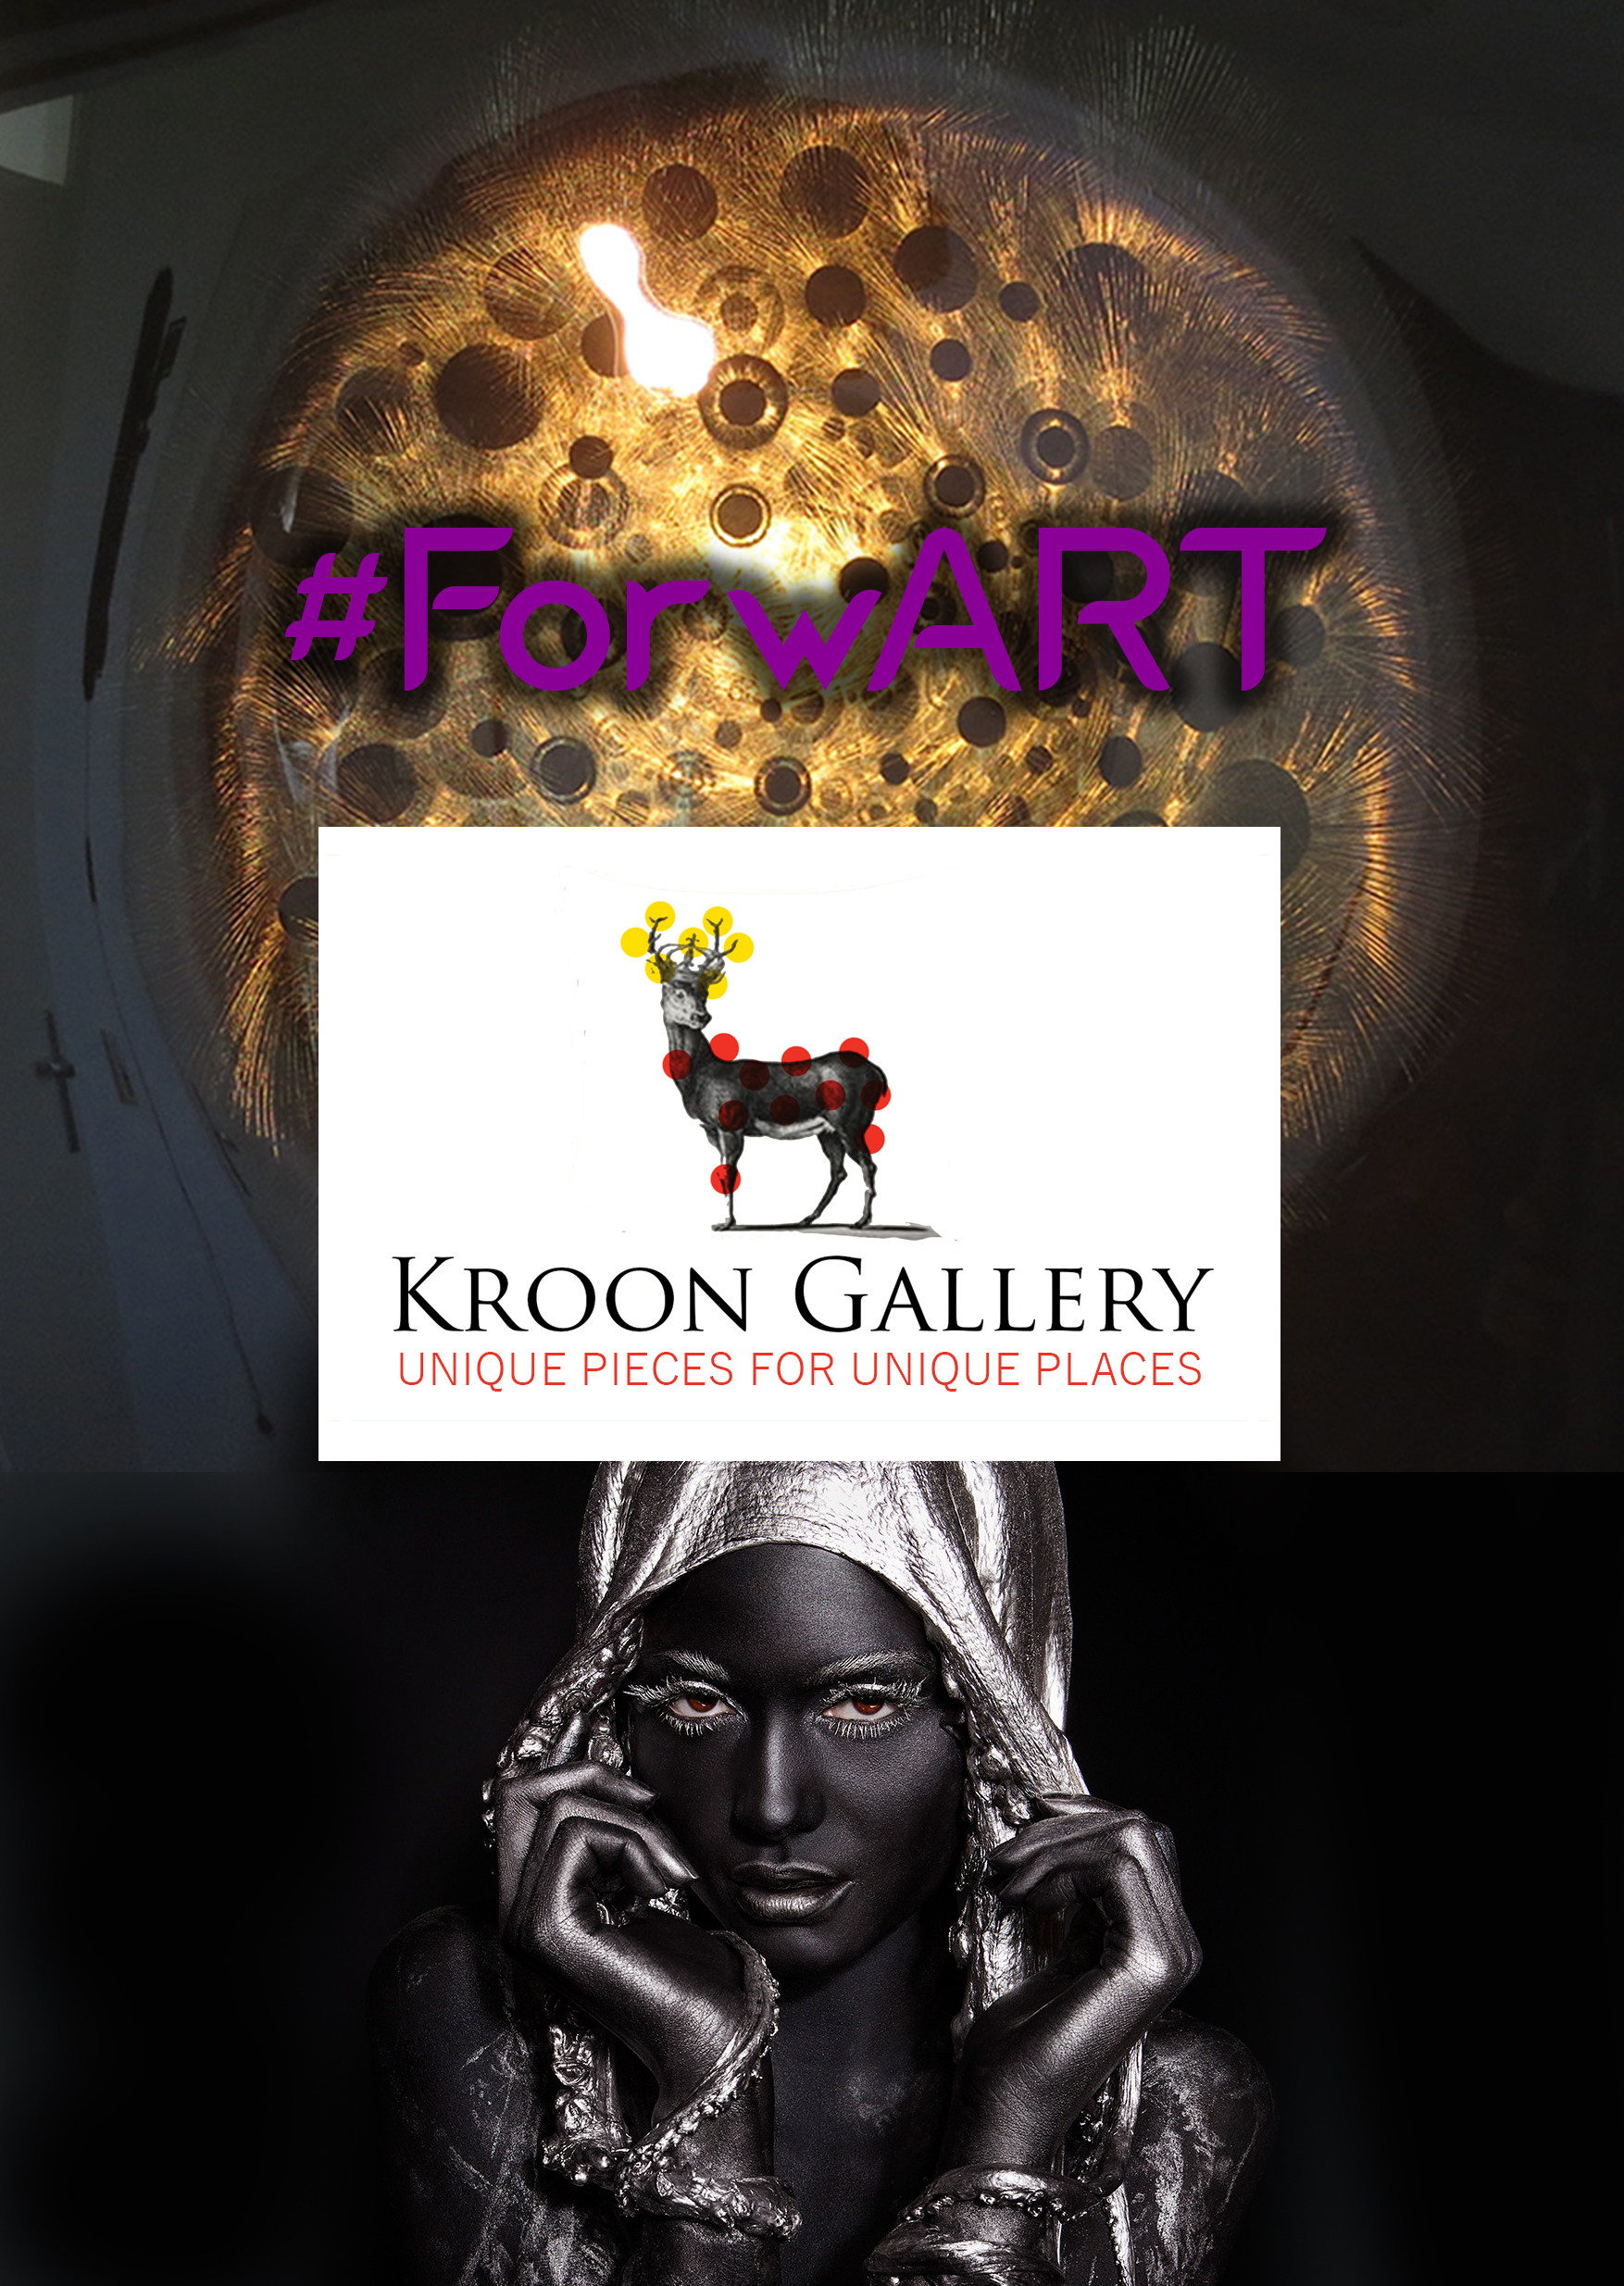 #forwart Kroon Gallery 2020